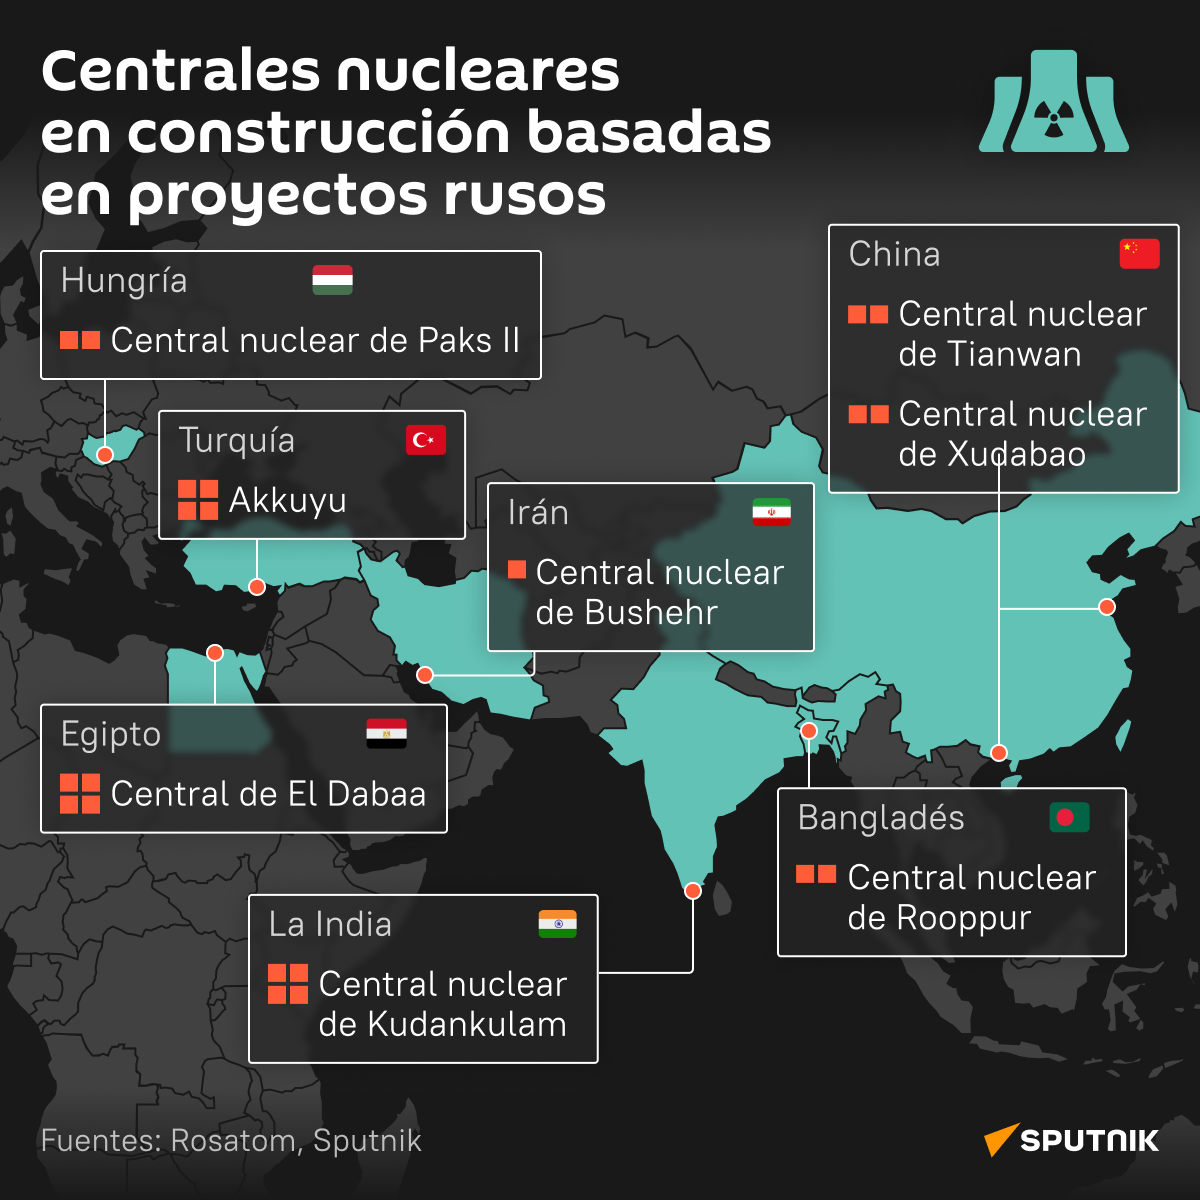 El mapa de centrales nucleares en construcción basadas en proyectos rusos  - Sputnik Mundo